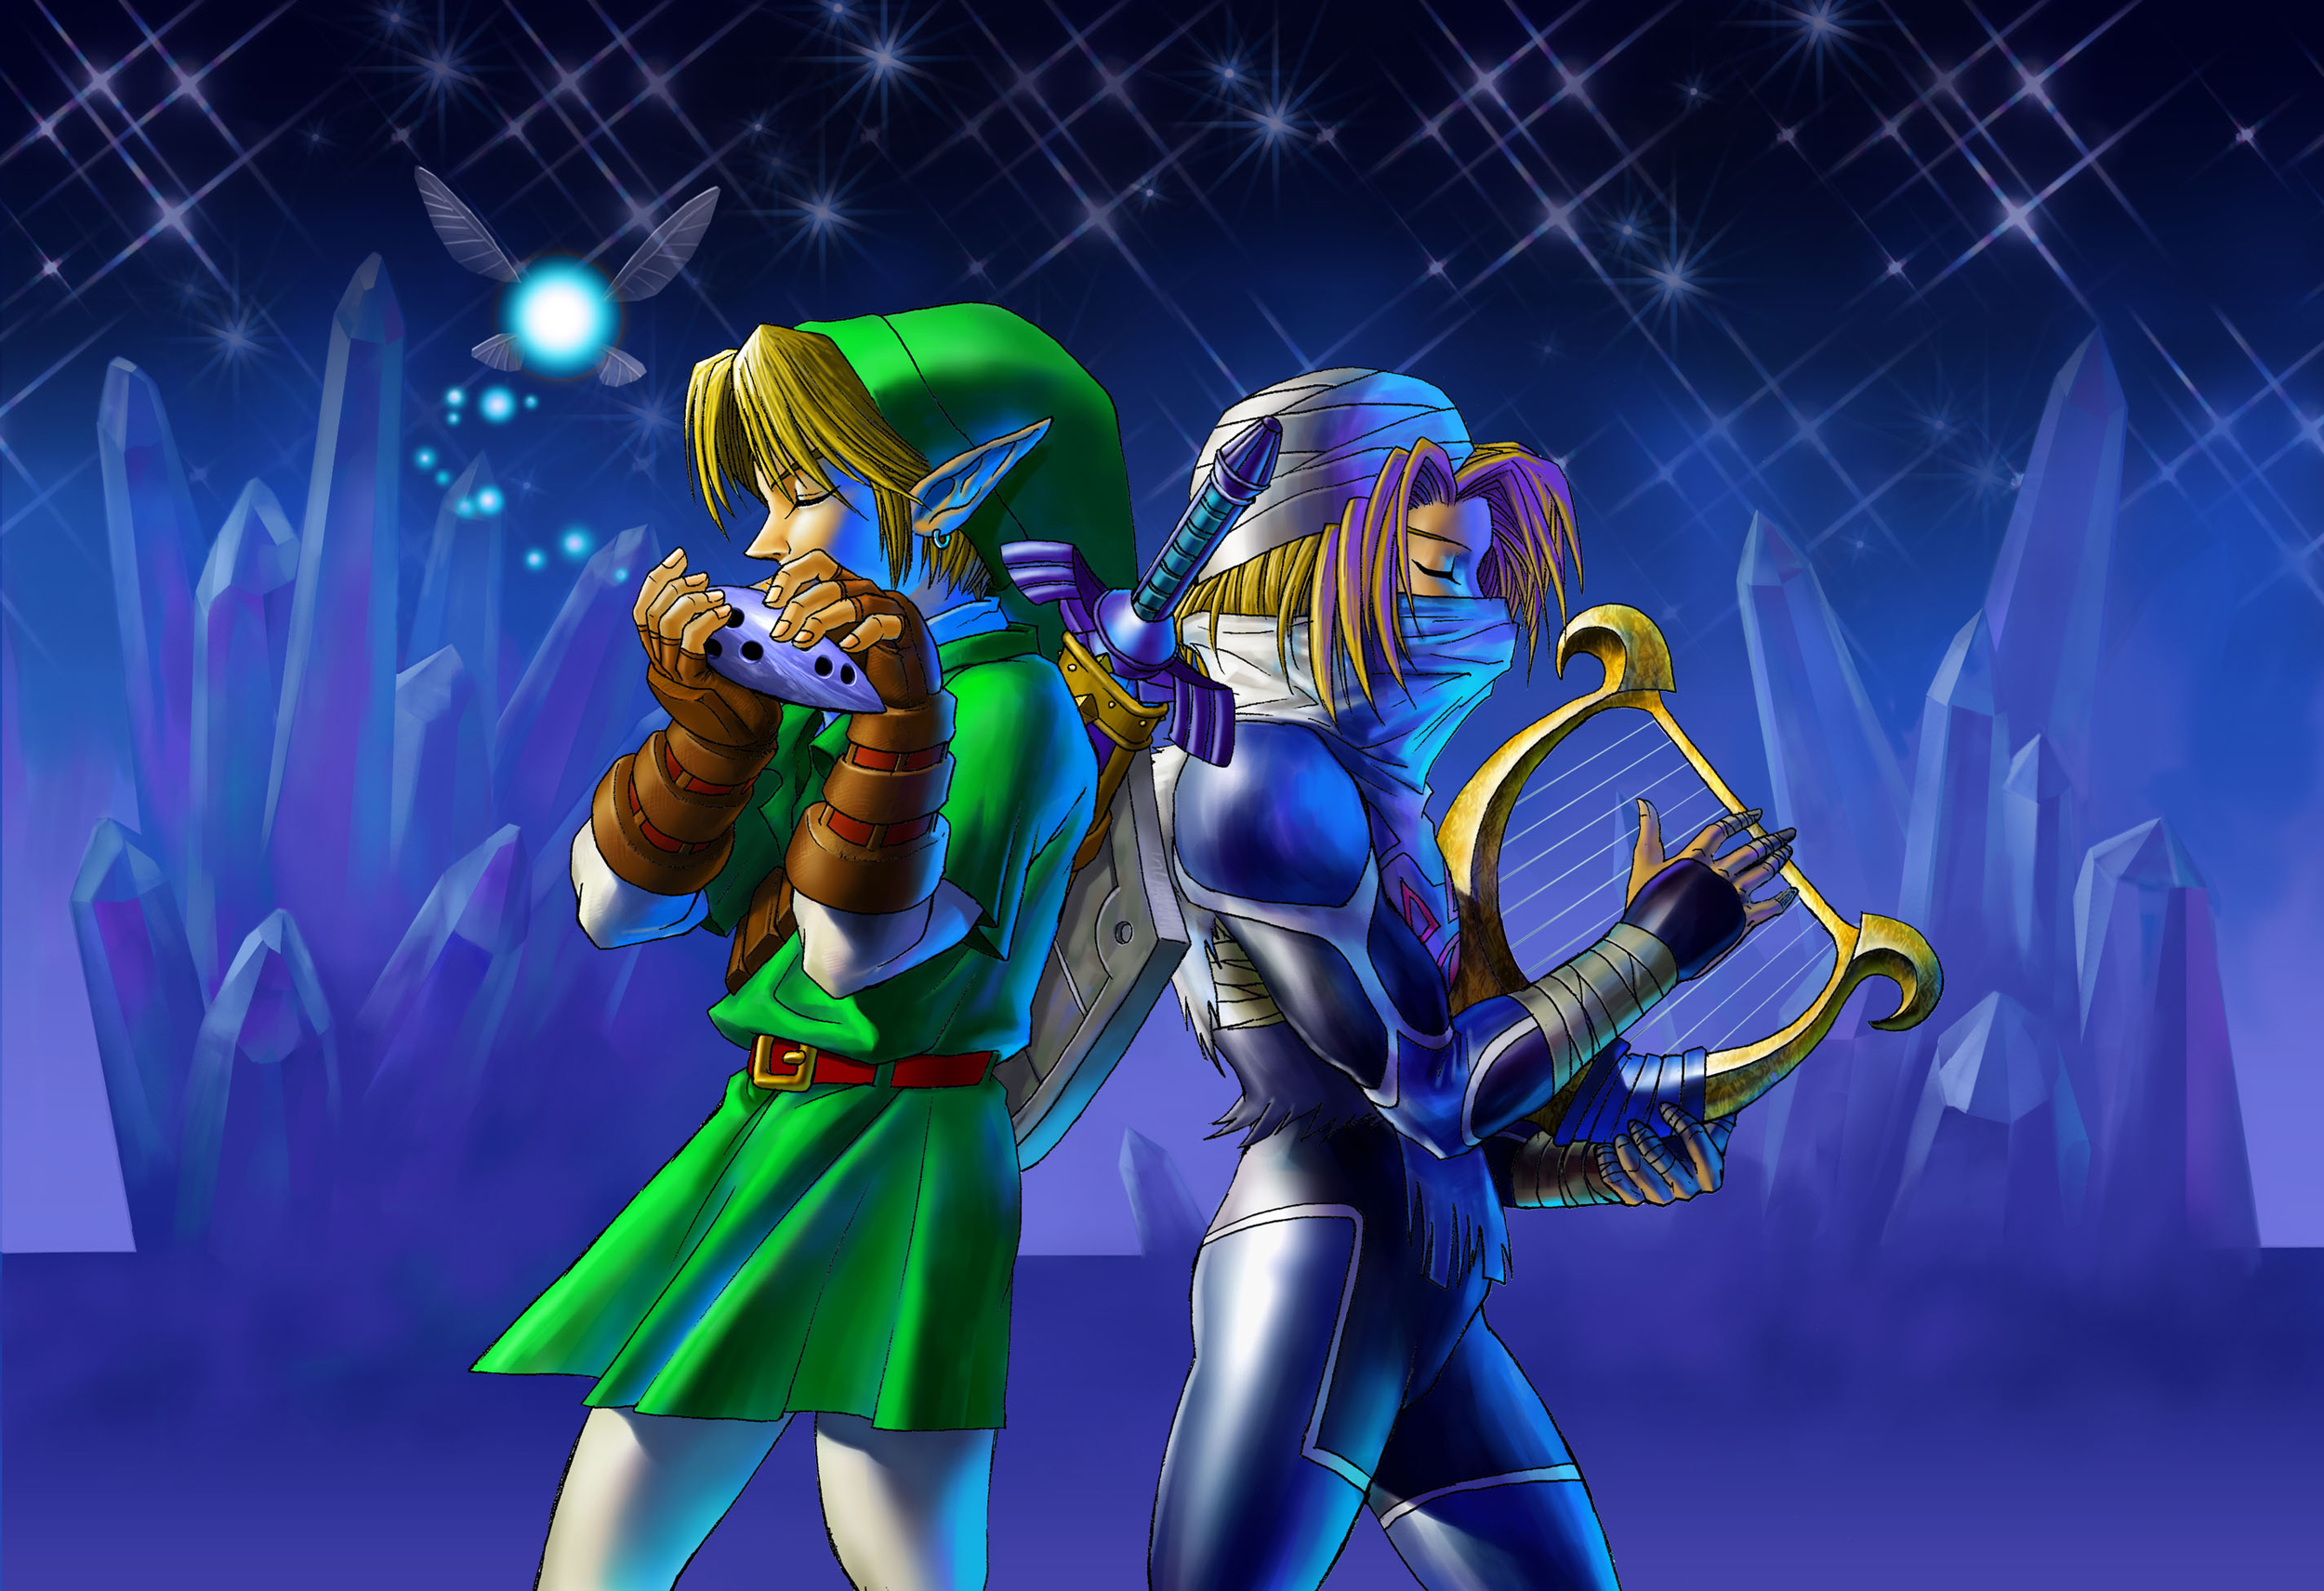 Glitches in Ocarina of Time 3D - Zelda Wiki